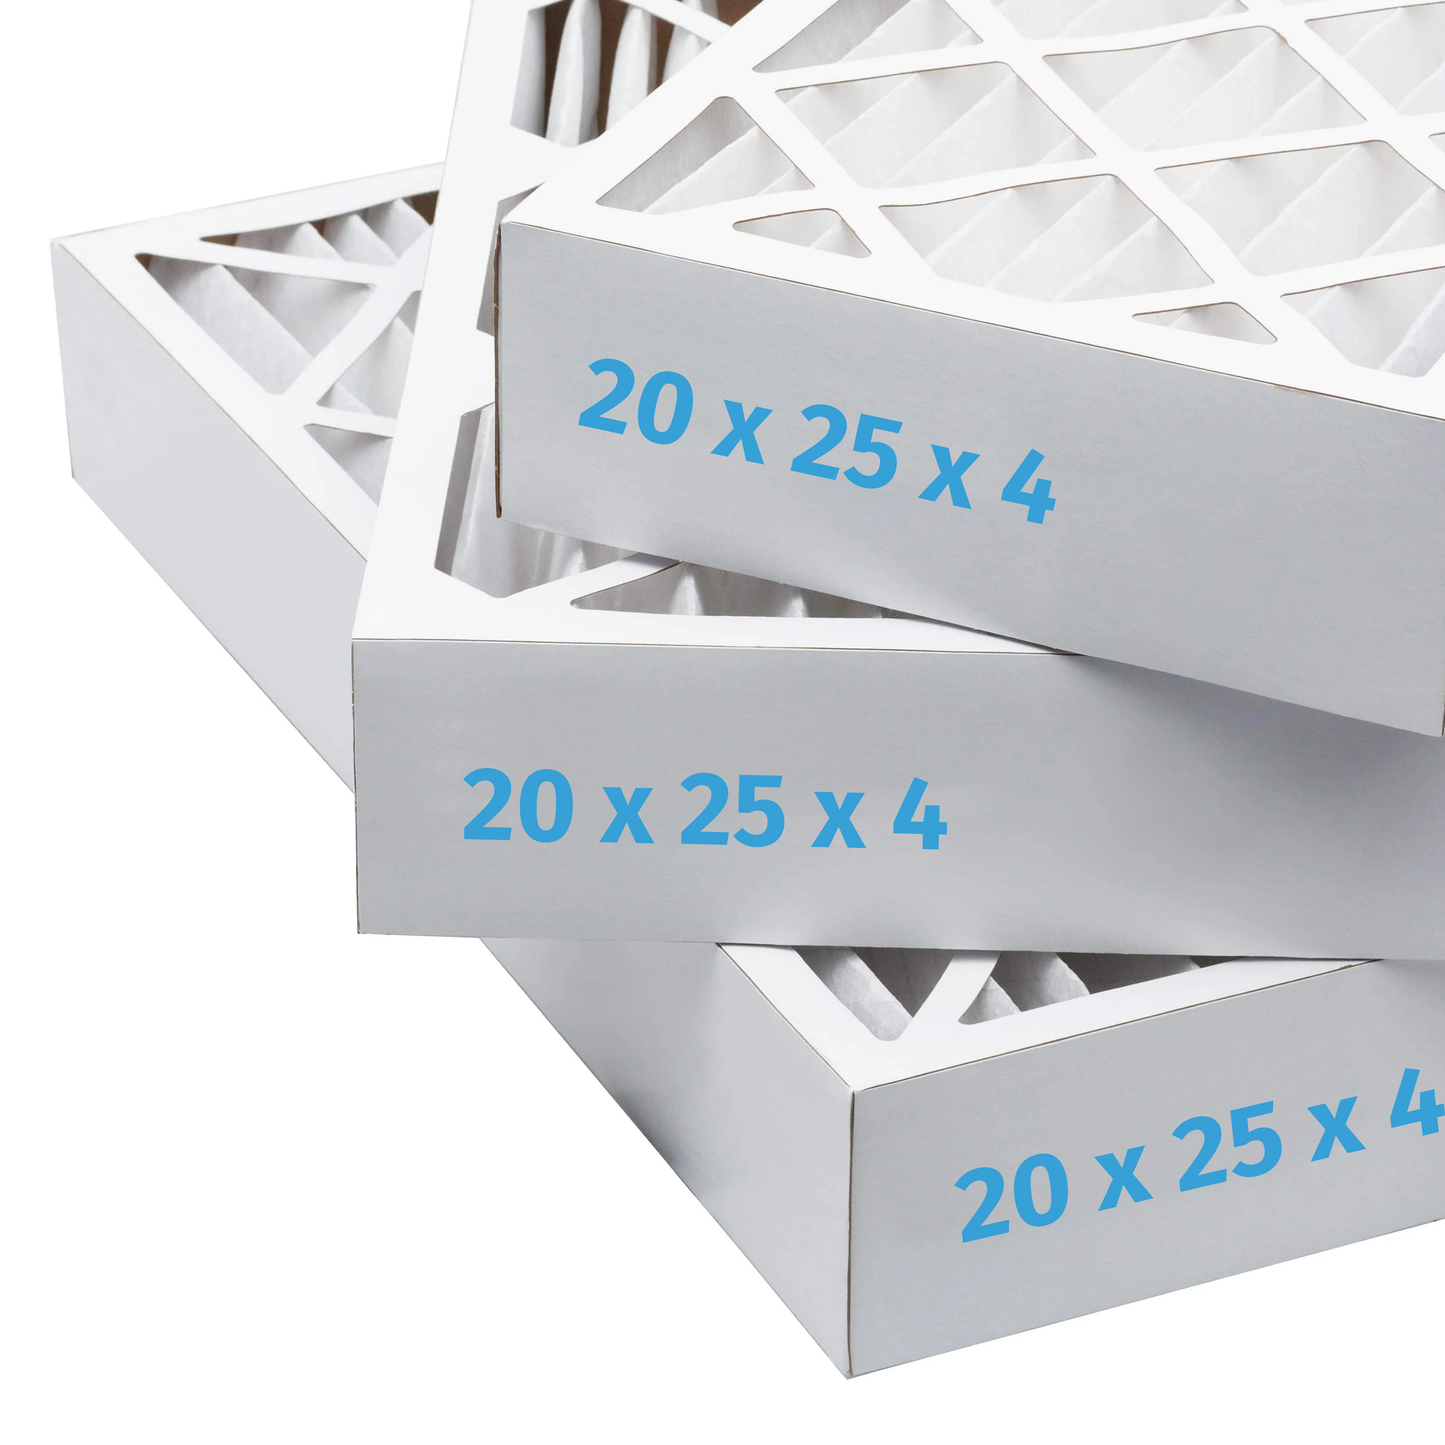 20x25x4 Air Filter - AC Furnace Filter